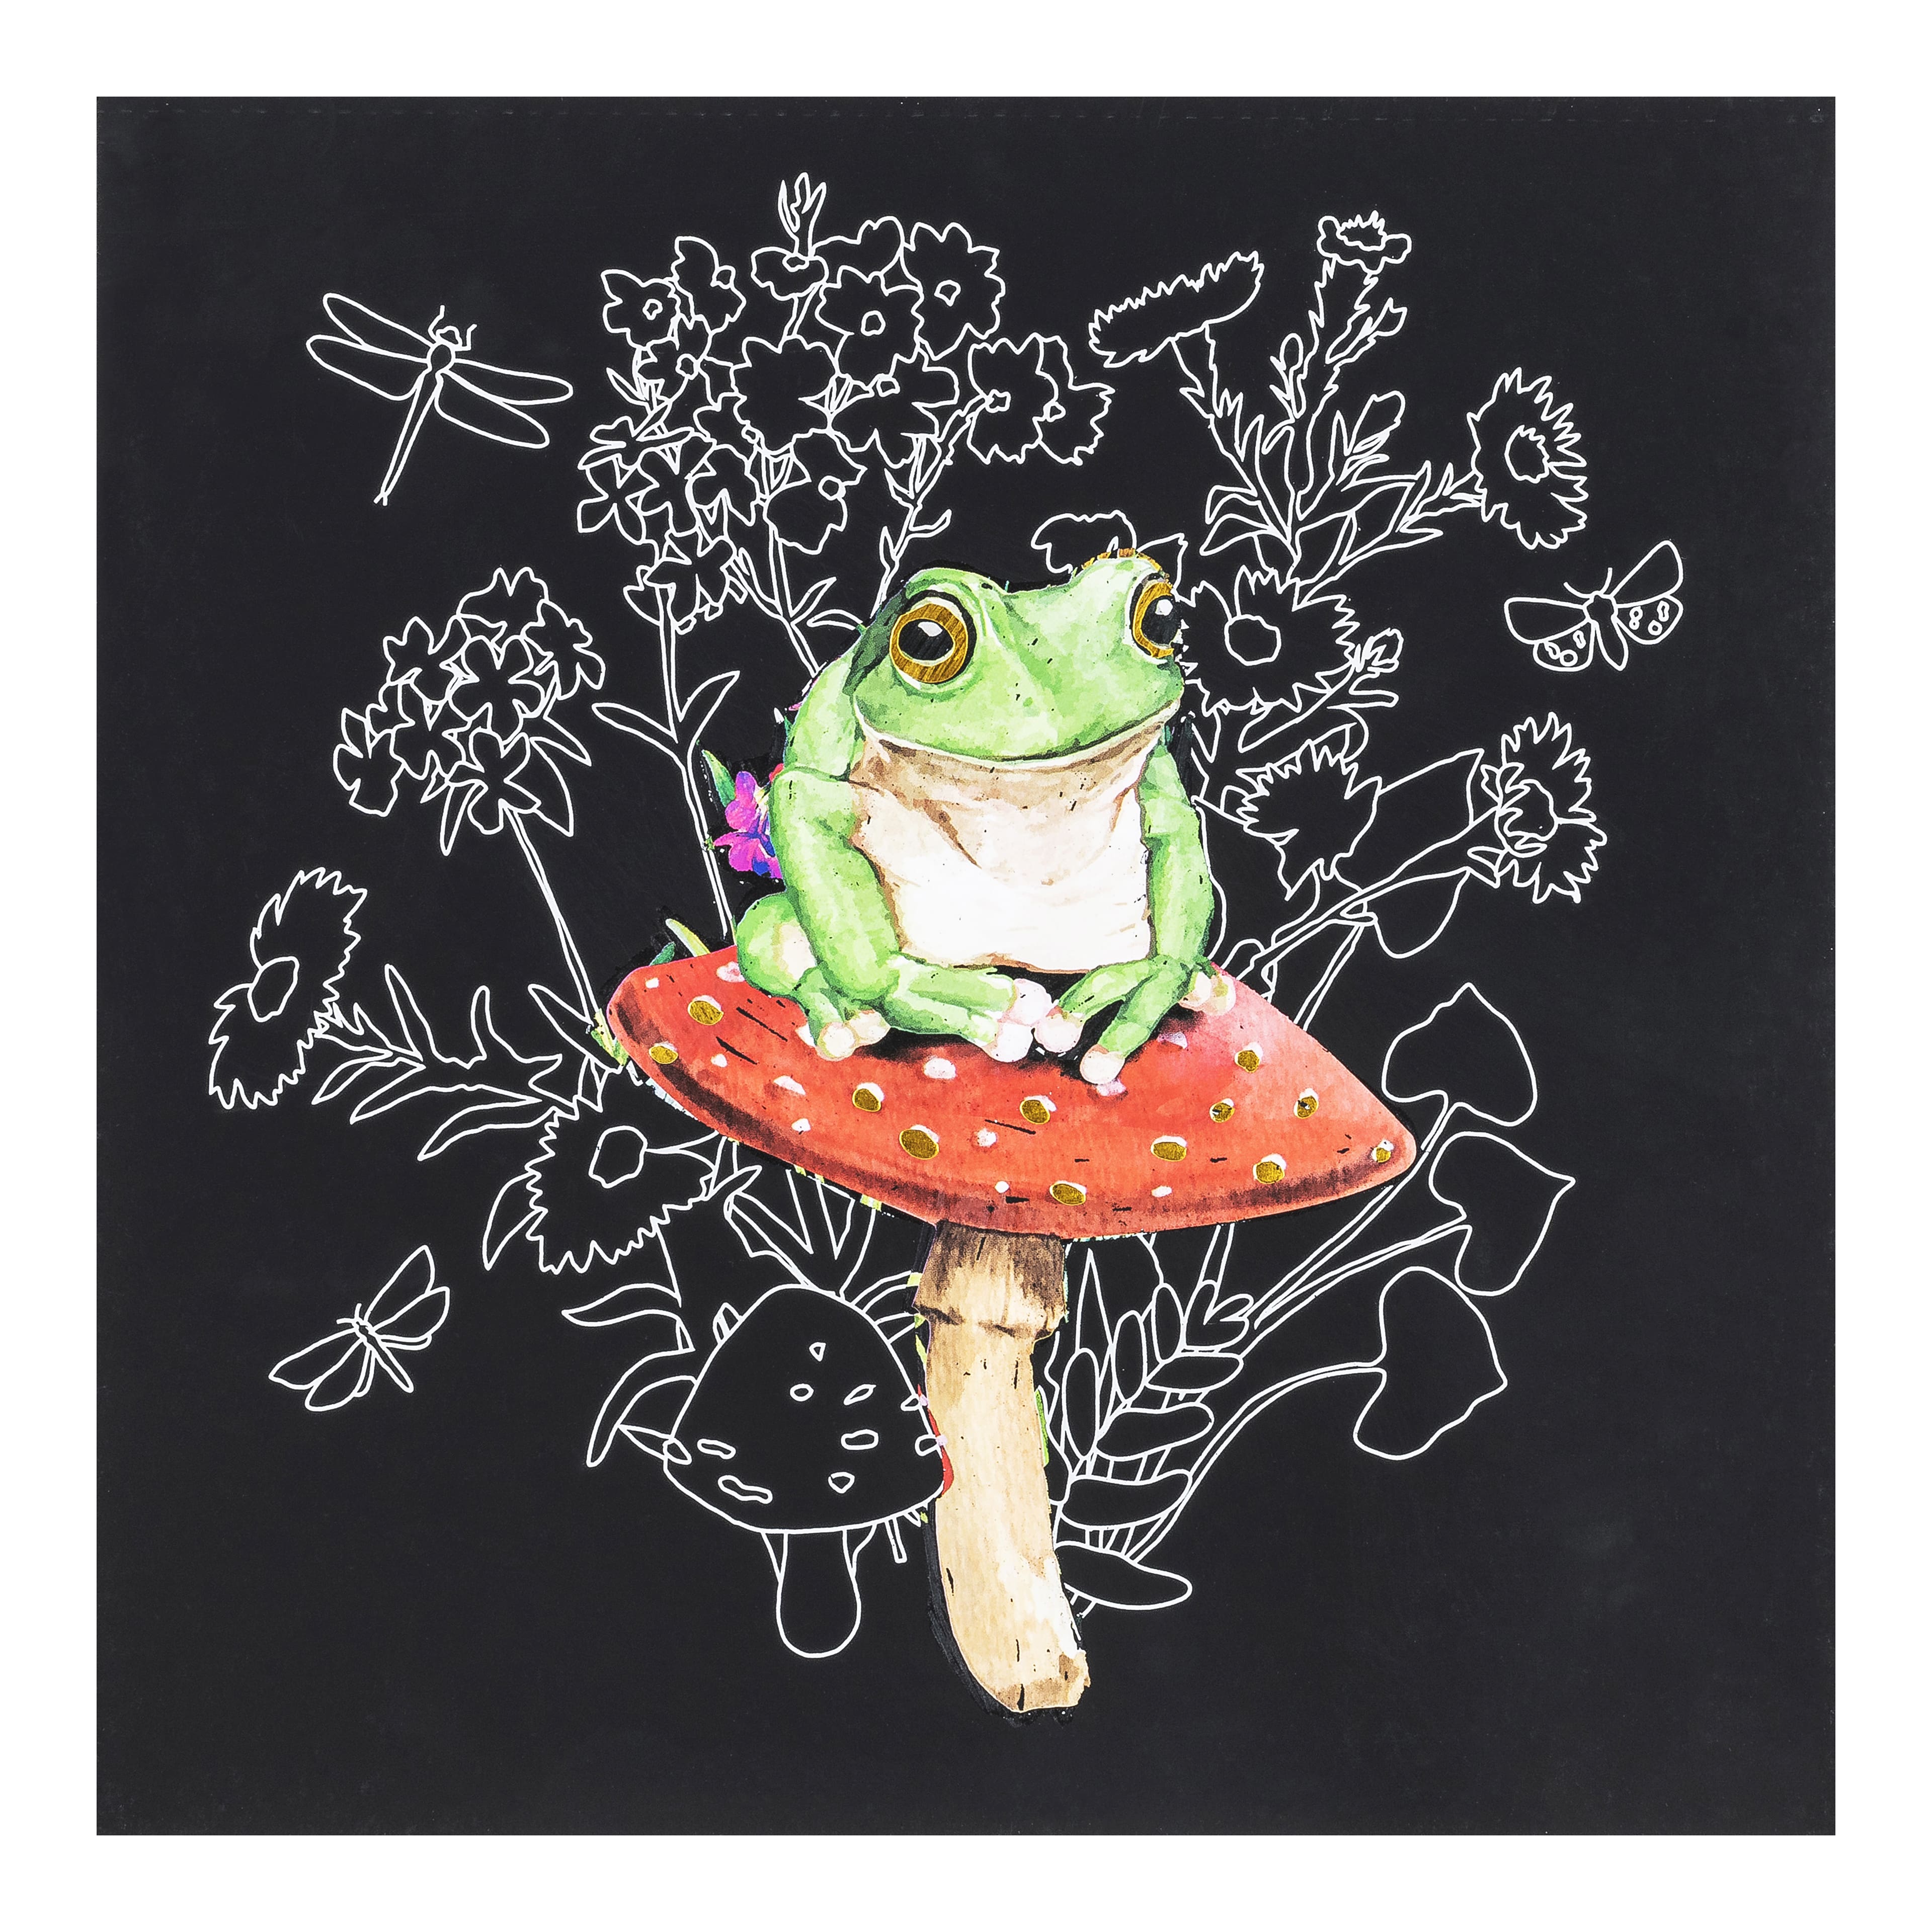 Brea Reese&#x2122; Nature Scratch Art Paper Pad